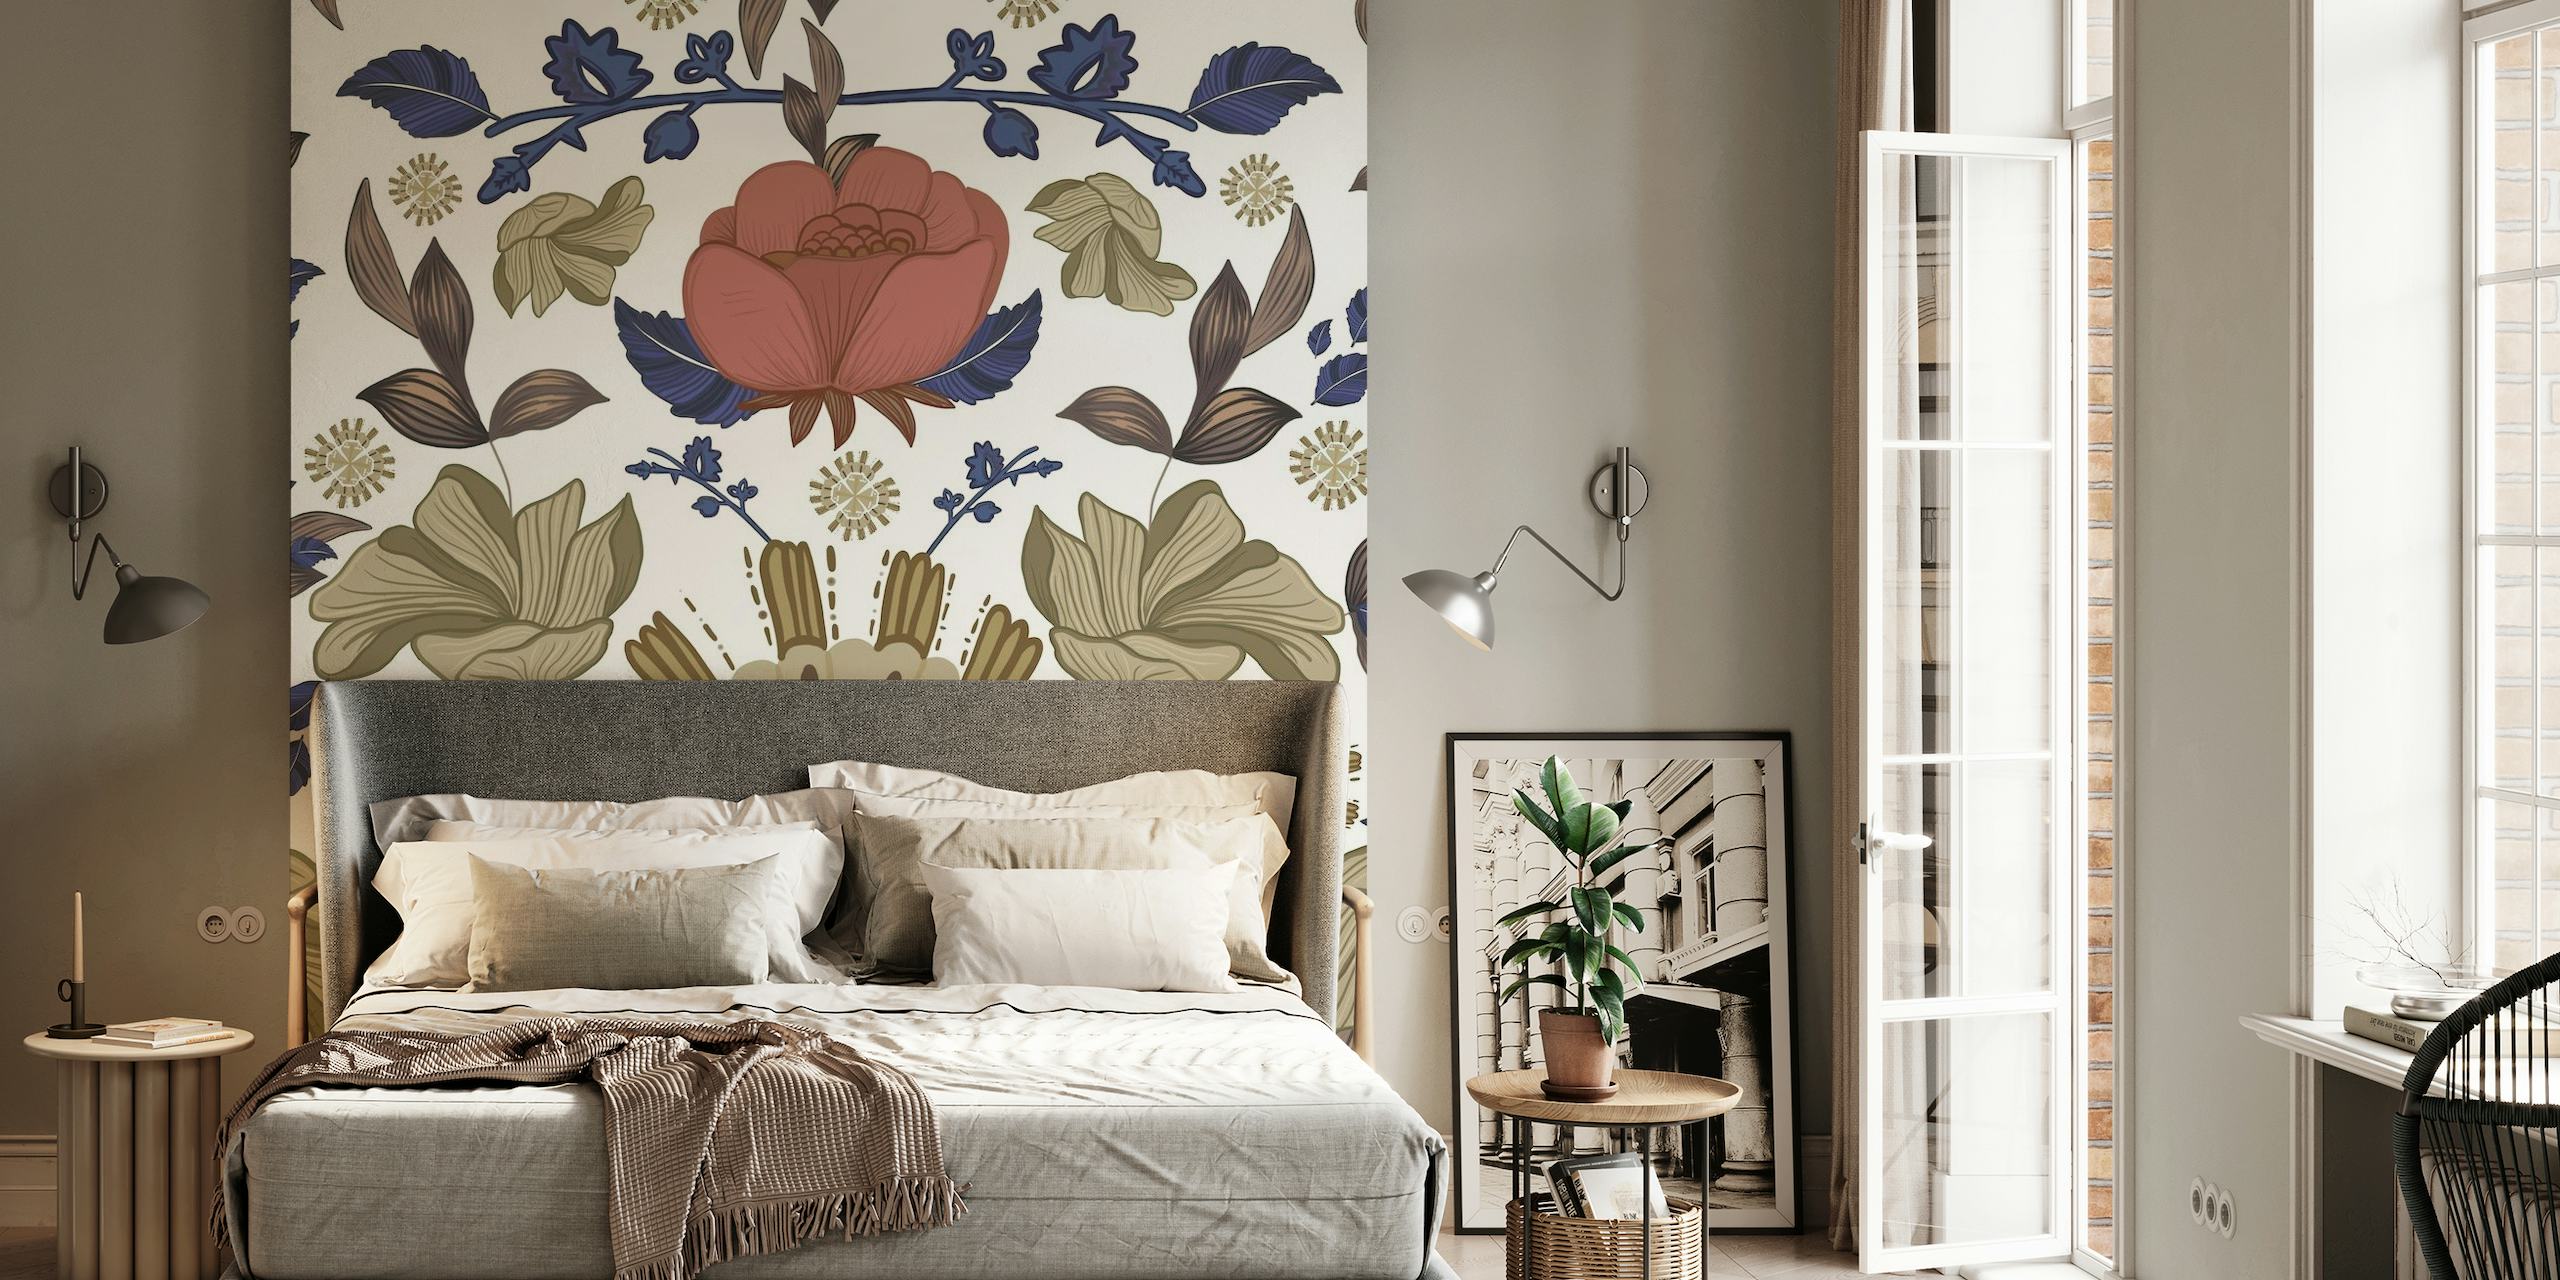 Romantische Regency-stijl bloemenbarokpatroon muurschildering met rozen en vintage elementen.